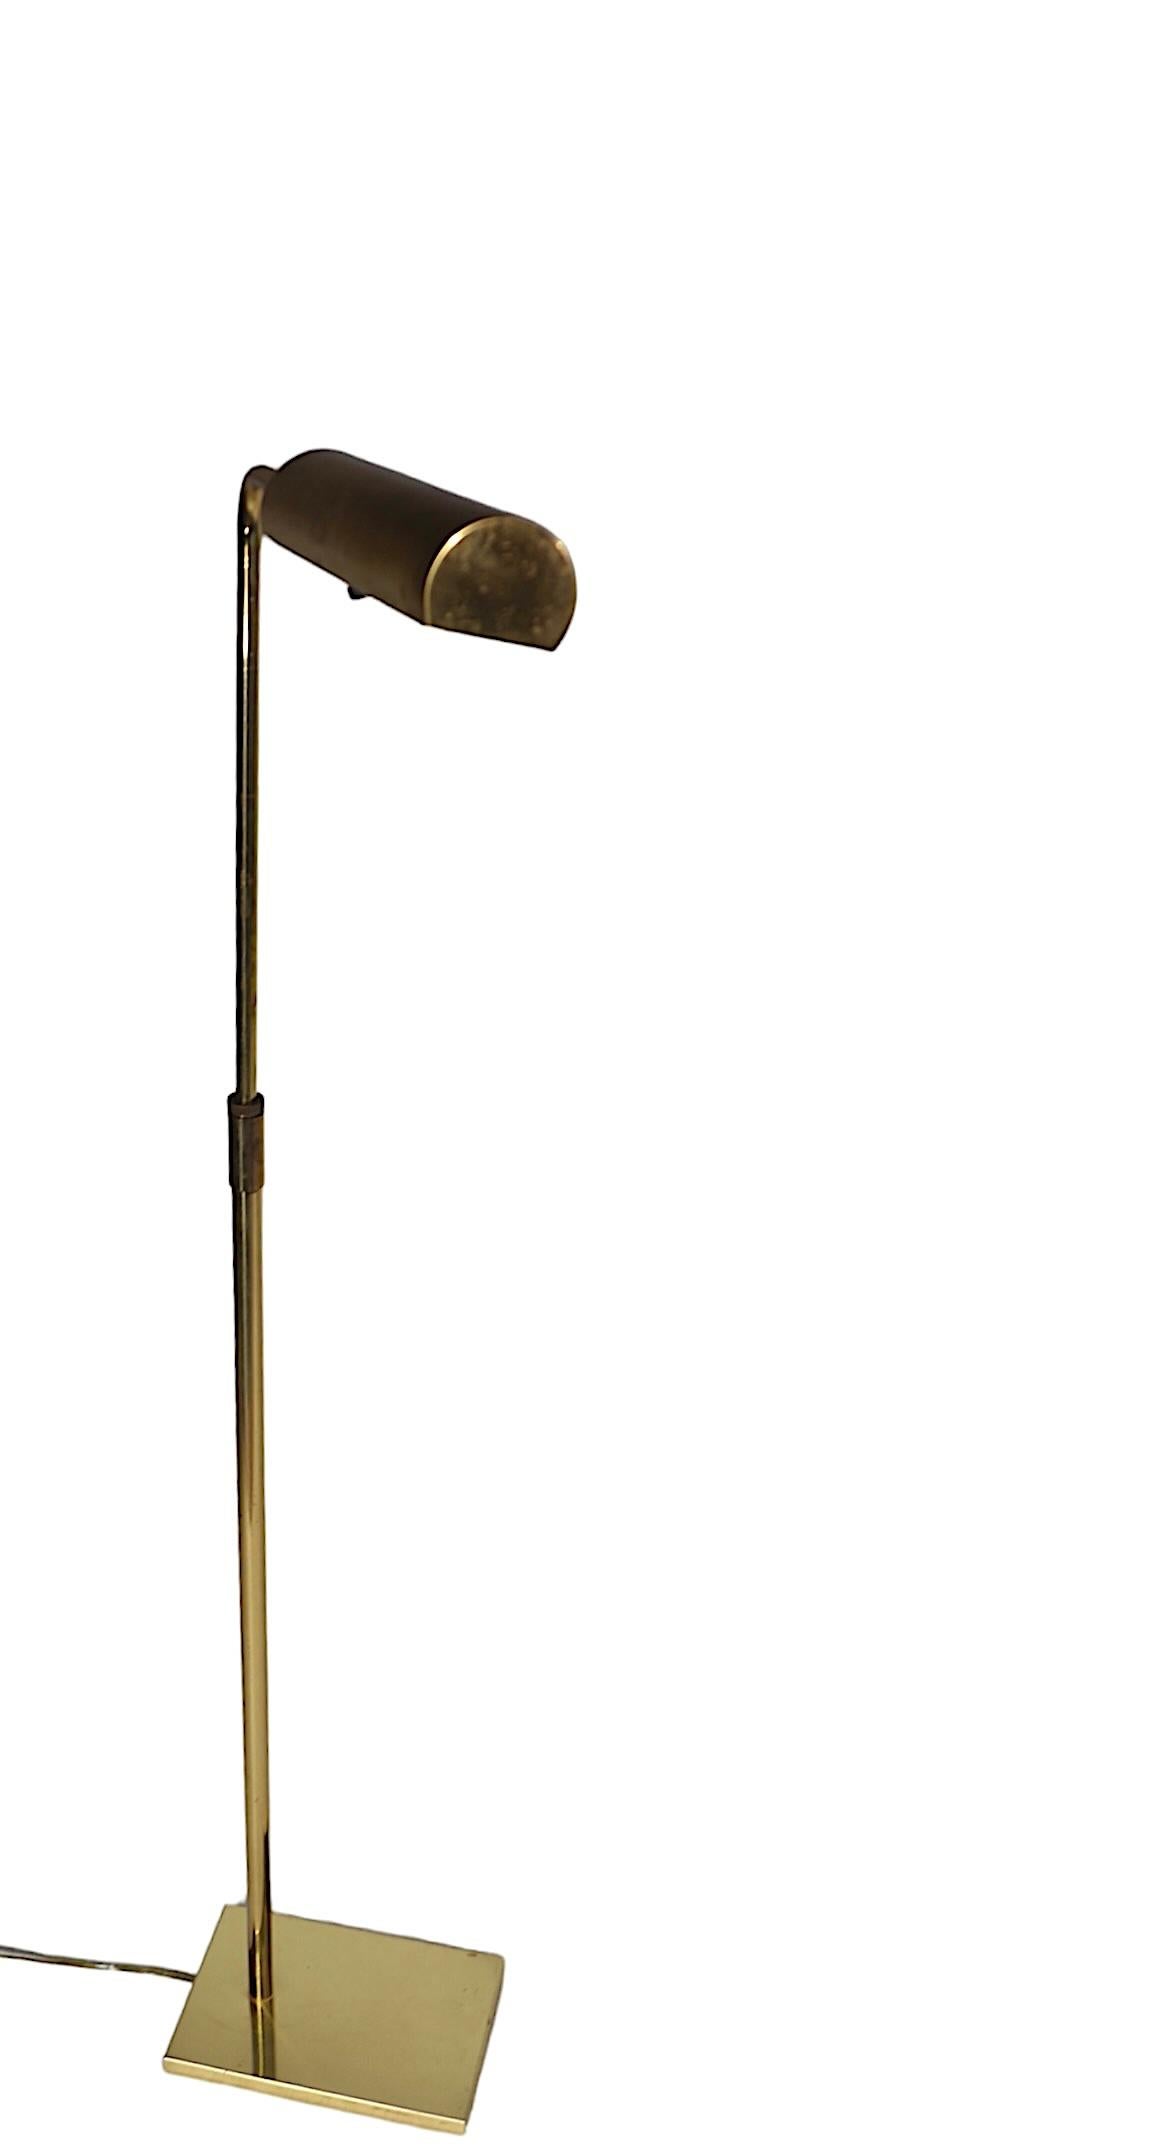 American  Koch & Lowy Pharmacy Floor Lamp in Brass c 1950/60's  For Sale